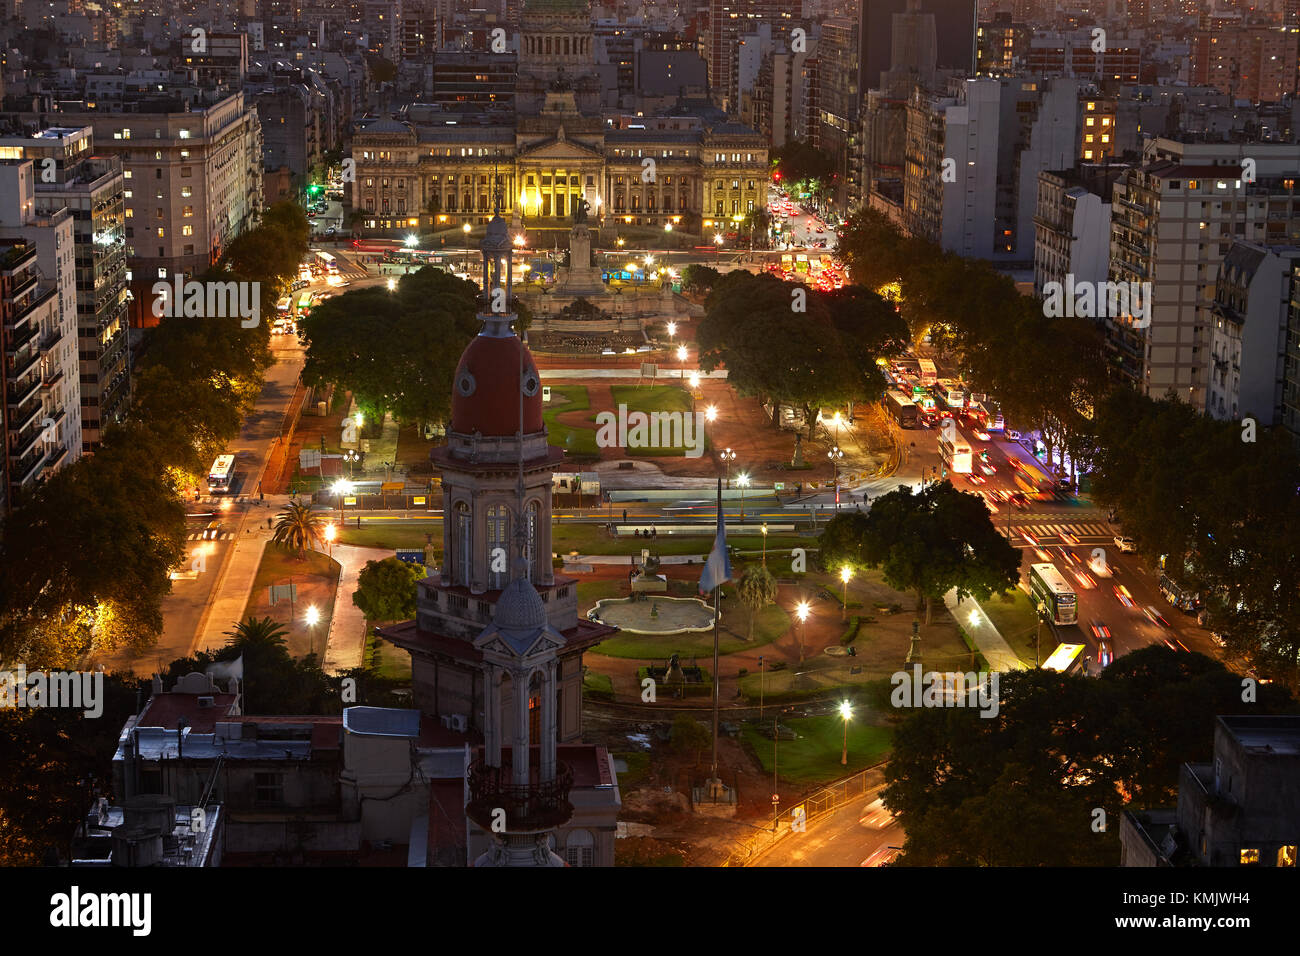 Sonnenuntergang über Plaza del Congreso und Palacio del Congreso, vom Palacio Barolo, Buenos Aires, Argentinien, Südamerika Stockfoto